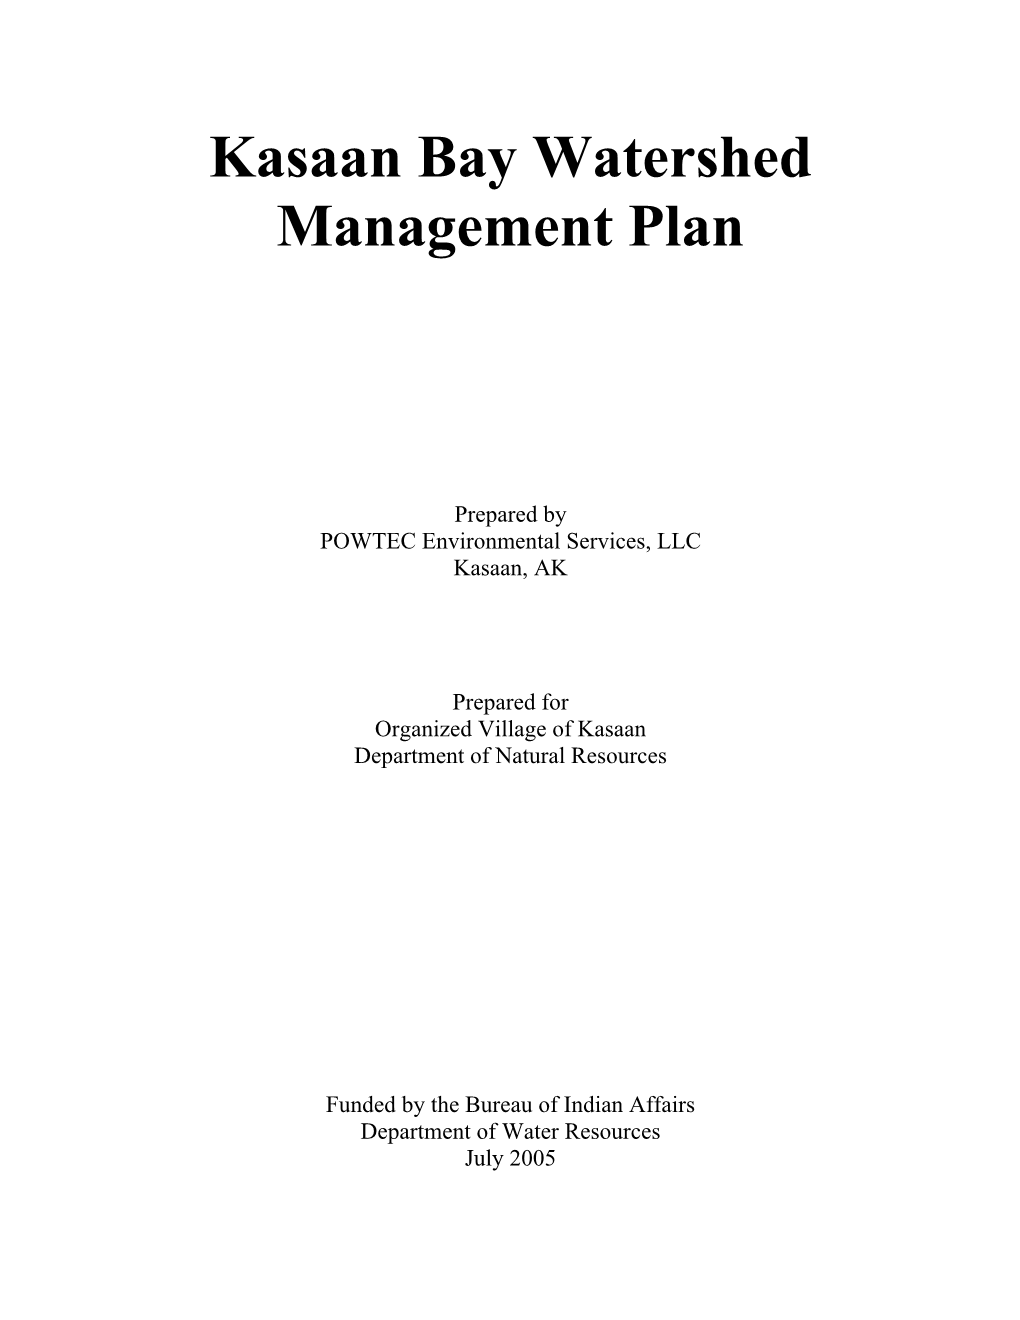 Kasaan Bay Watershed Management Plan 2005